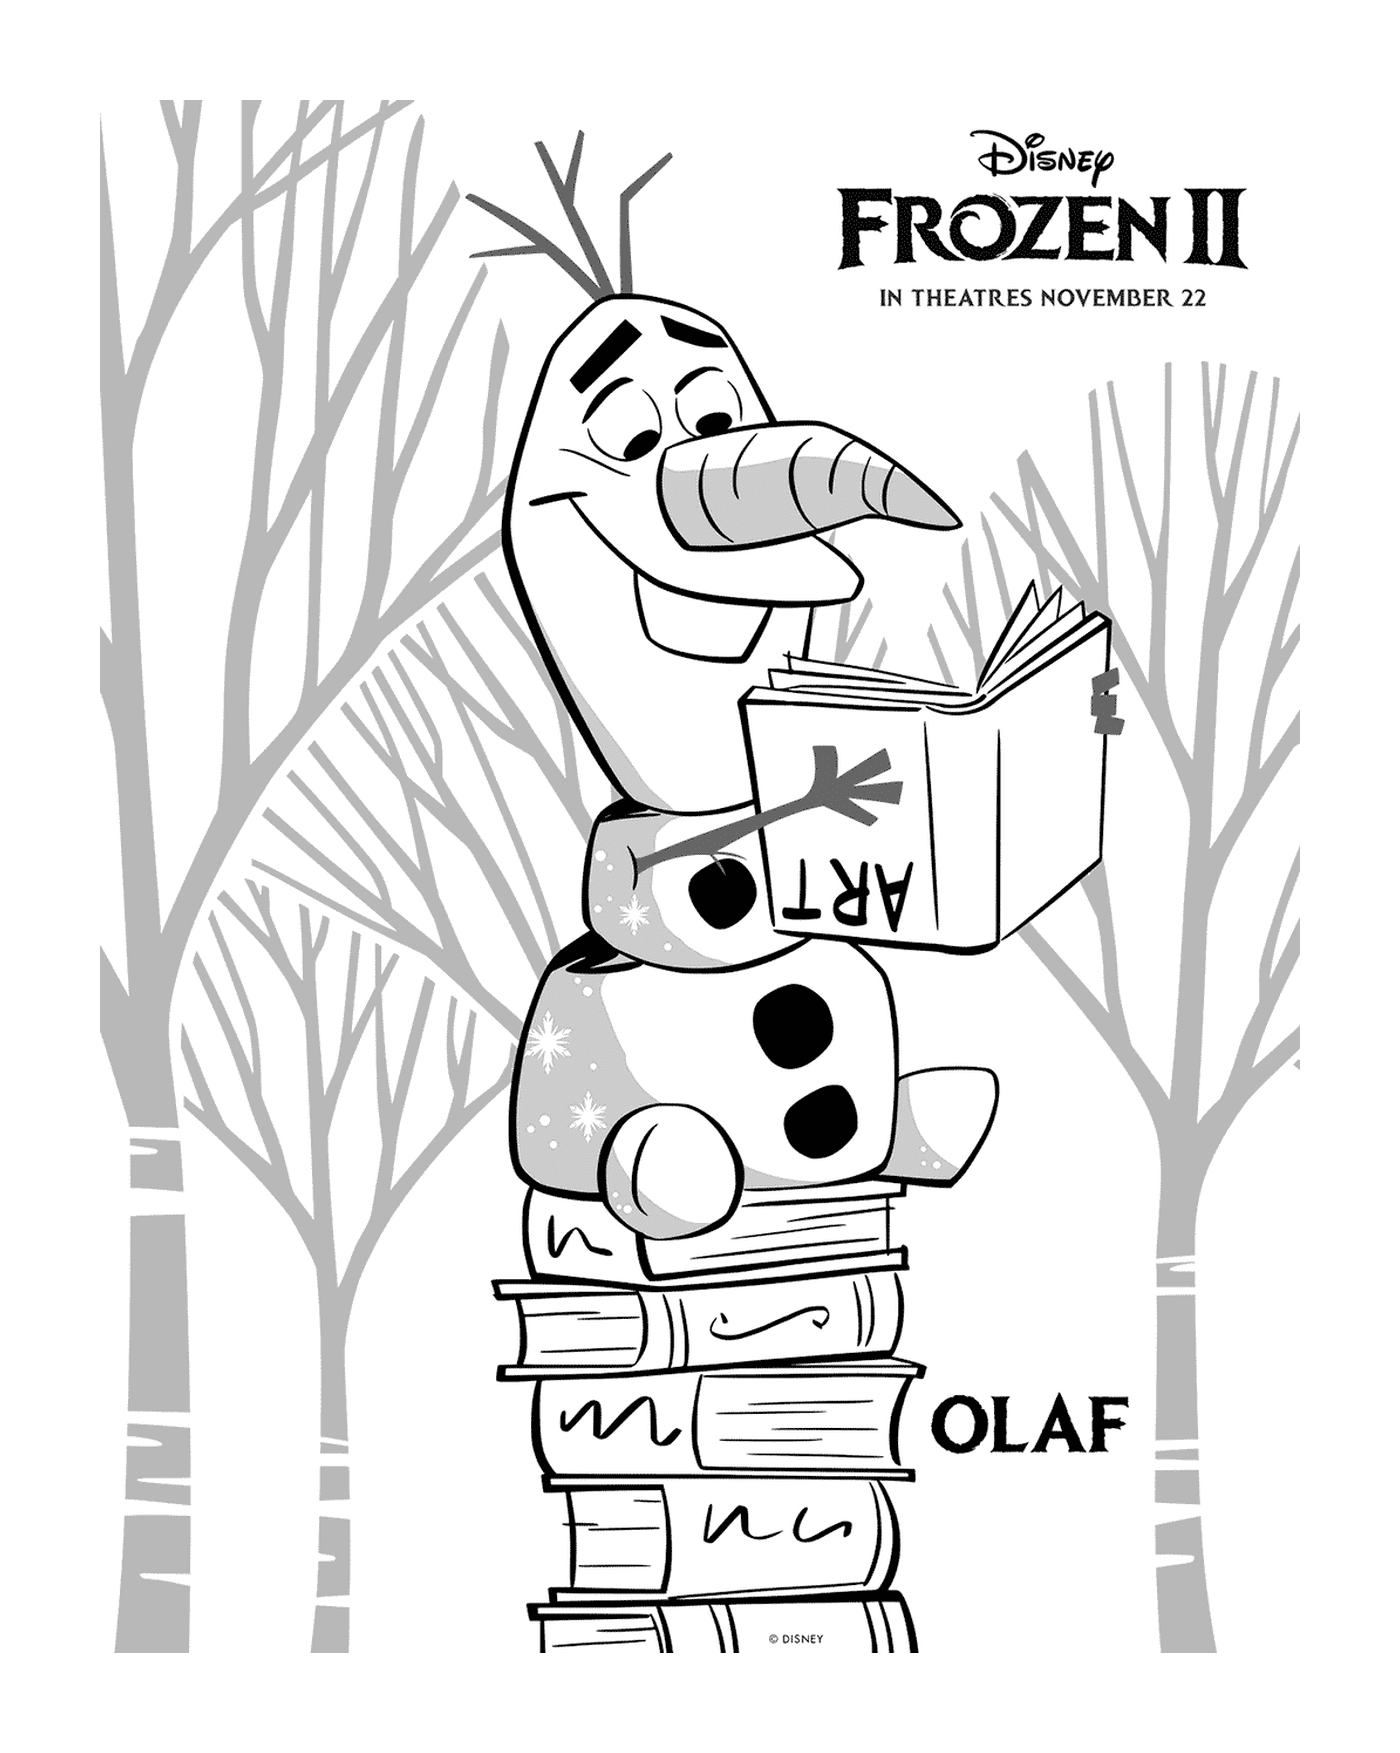  A Olaf le gusta leer en Disney's Snow Queen 2 